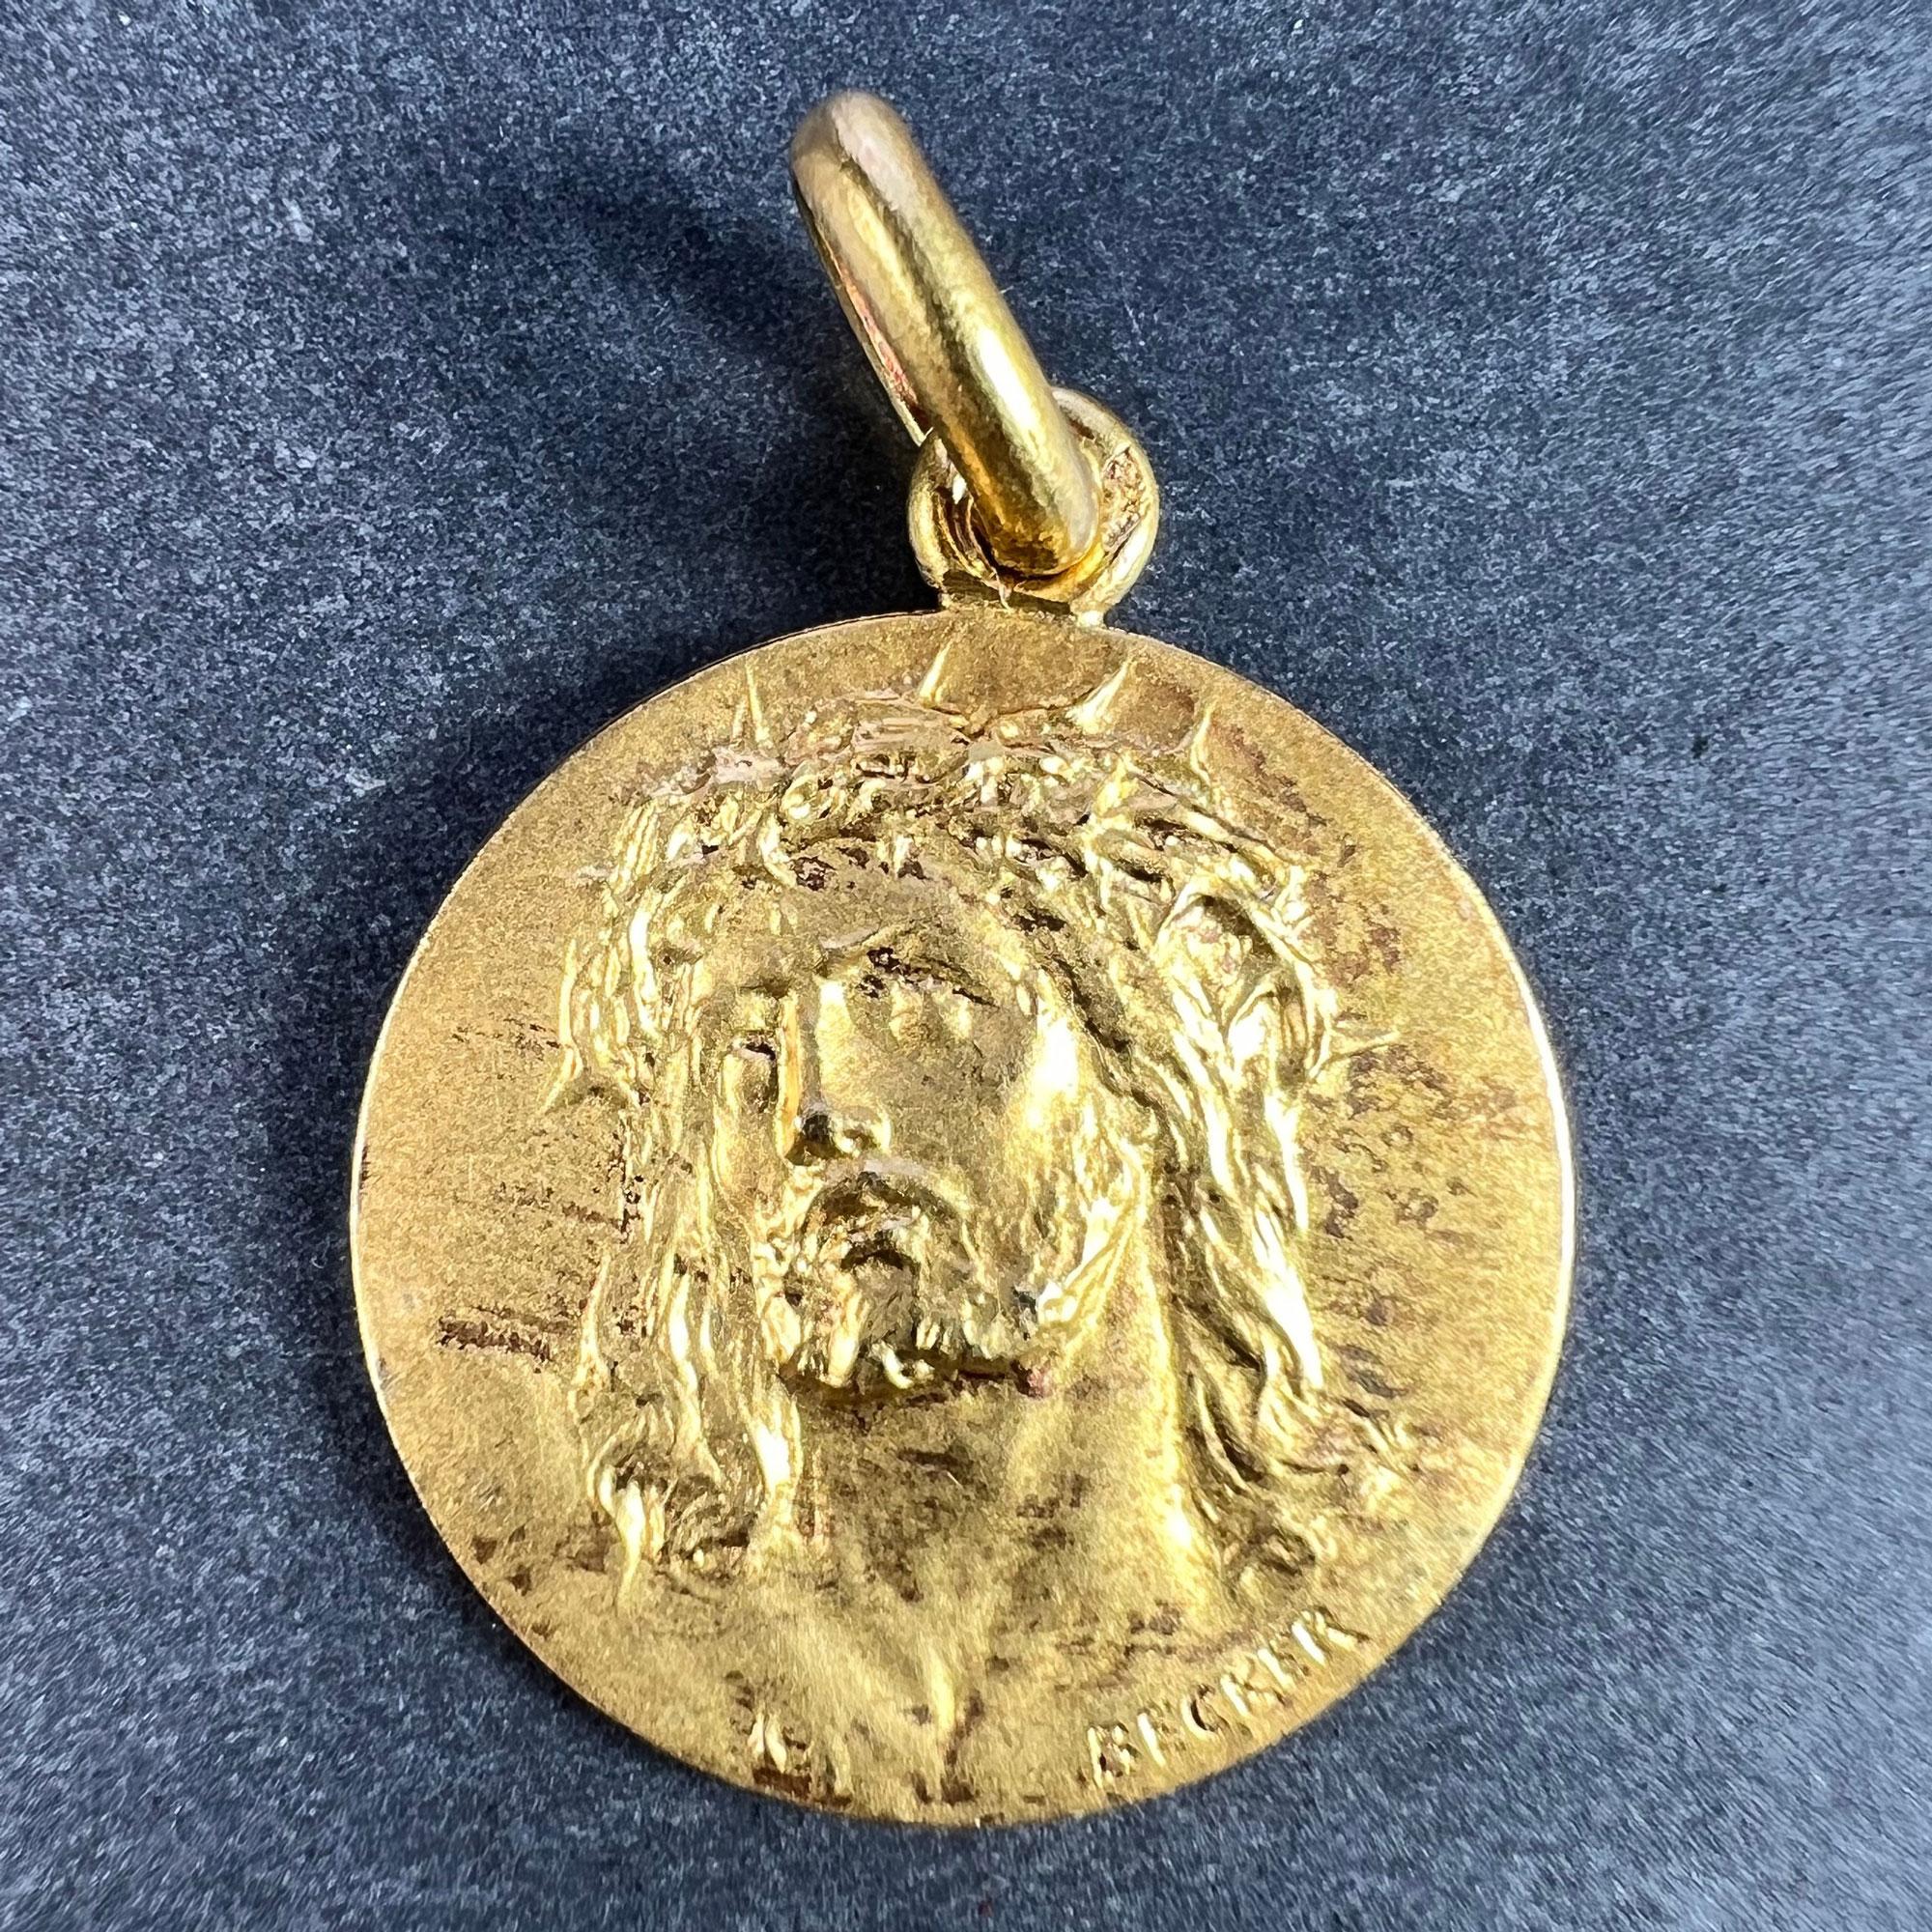 Pendentif à breloques français en or jaune 18 carats (18K) conçu comme une médaille ronde représentant Jésus-Christ portant la couronne d'épines. Signée Becker, estampillée de la tête d'aigle pour l'or 18 carats et de fabrication française, ainsi